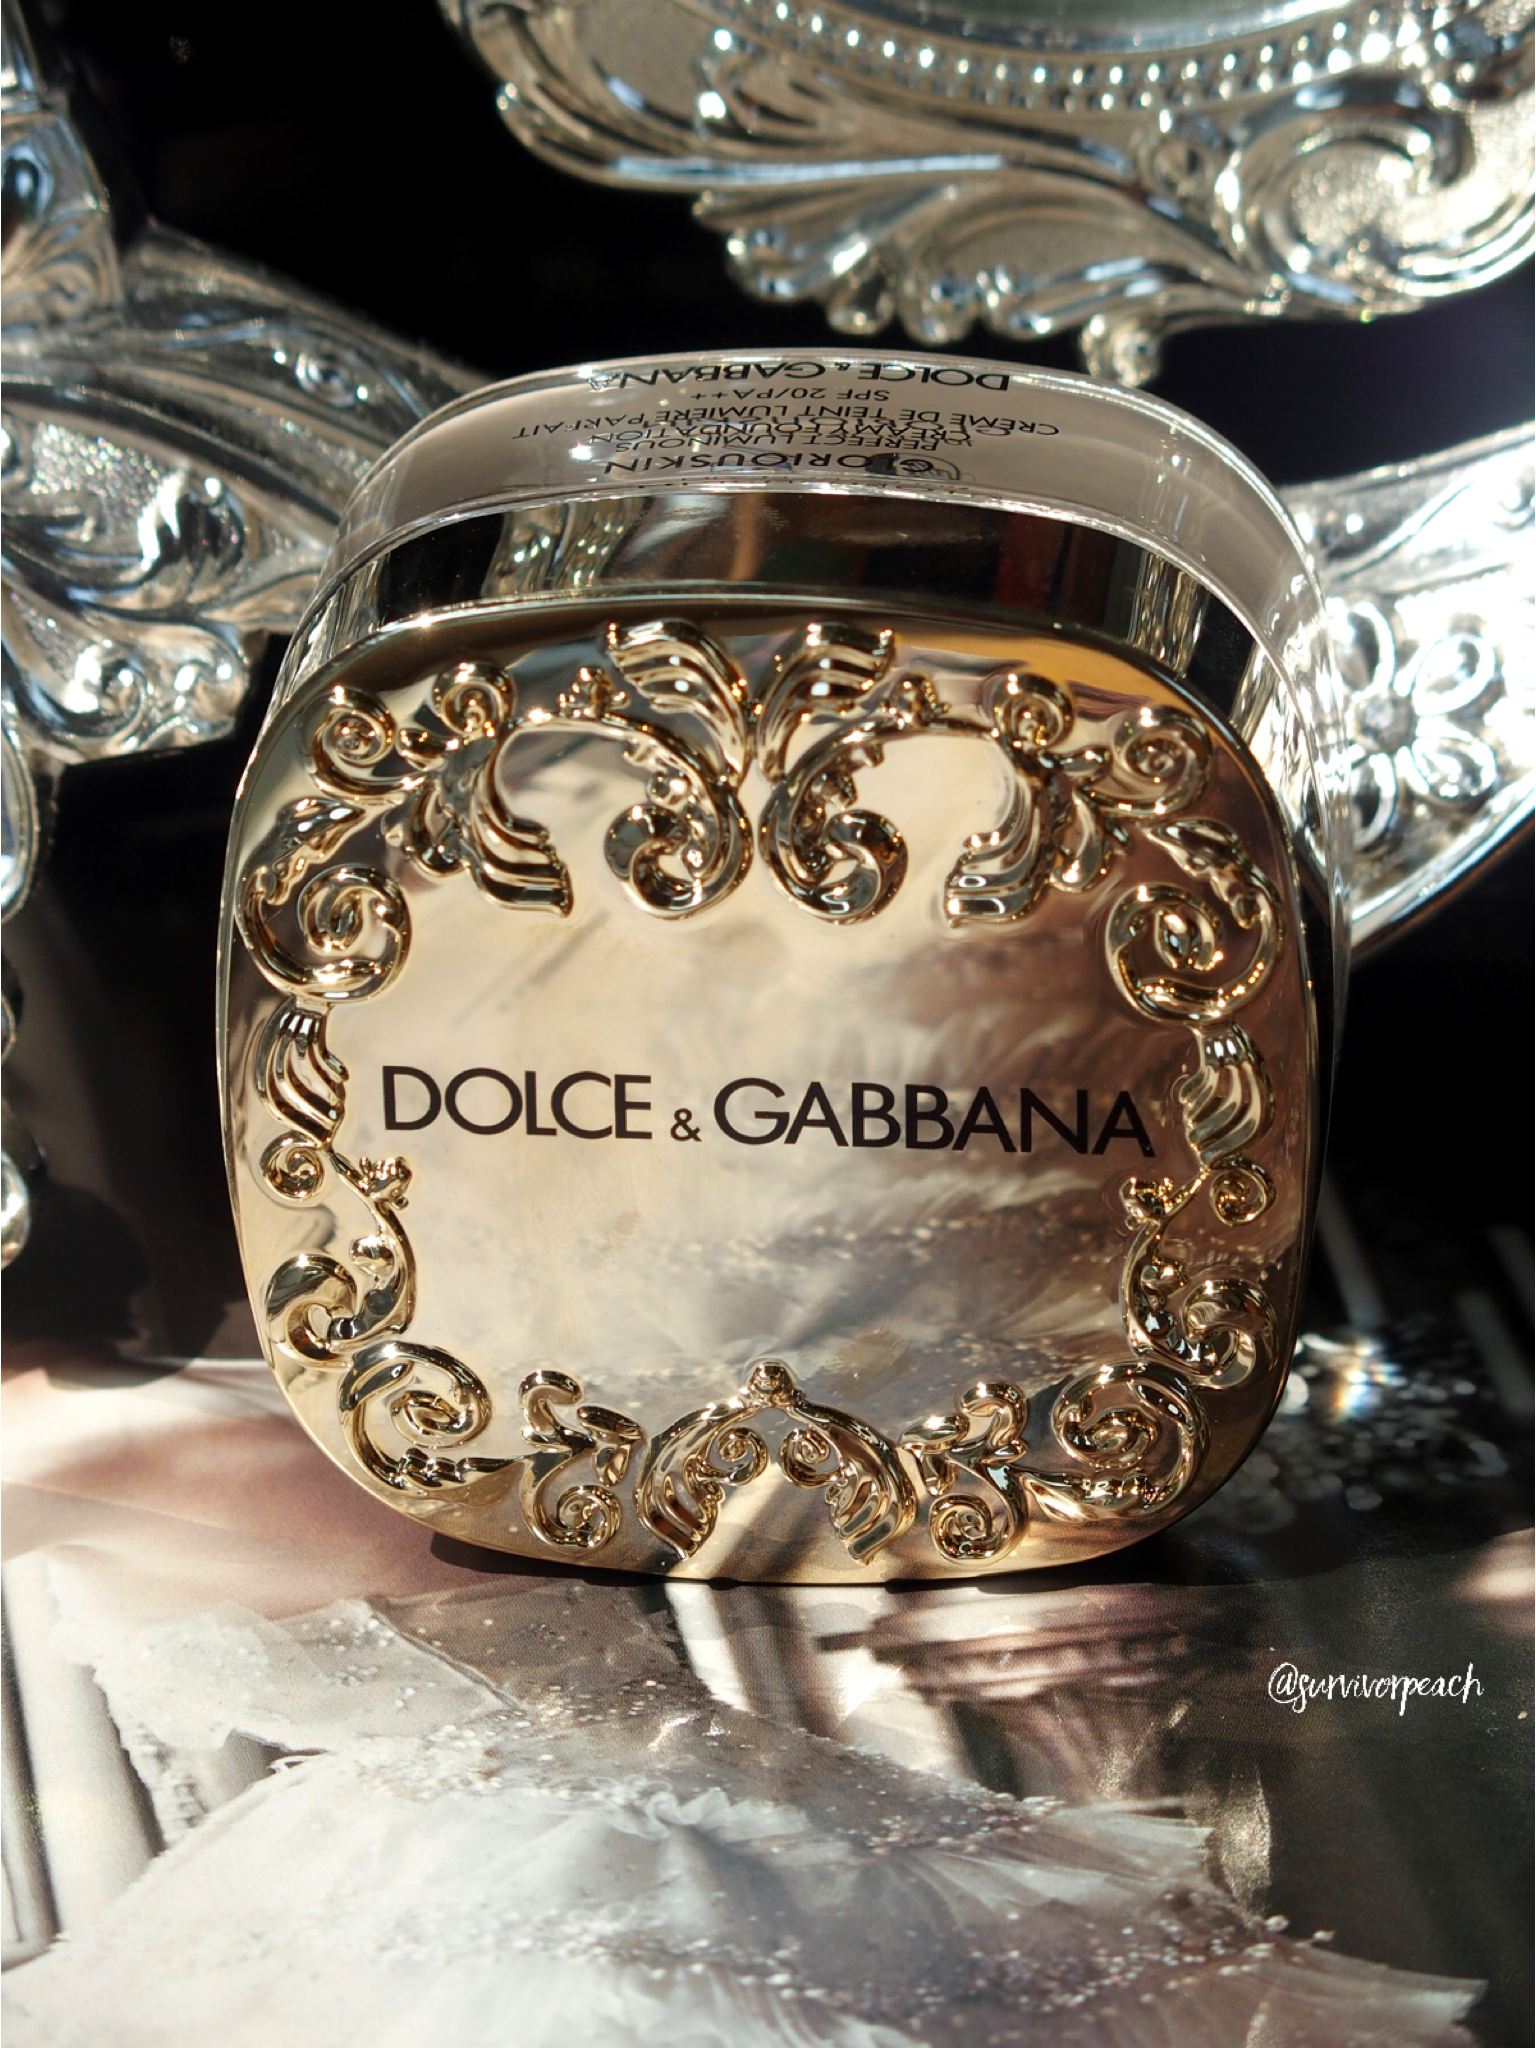 Крема dolce gabbana. Дольче Габбана gloriouskin. Dolce Gabbana gloriouskin. Тональный крем Дольче Габбана. Dolce Gabbana gloriouskin 330 Almond.